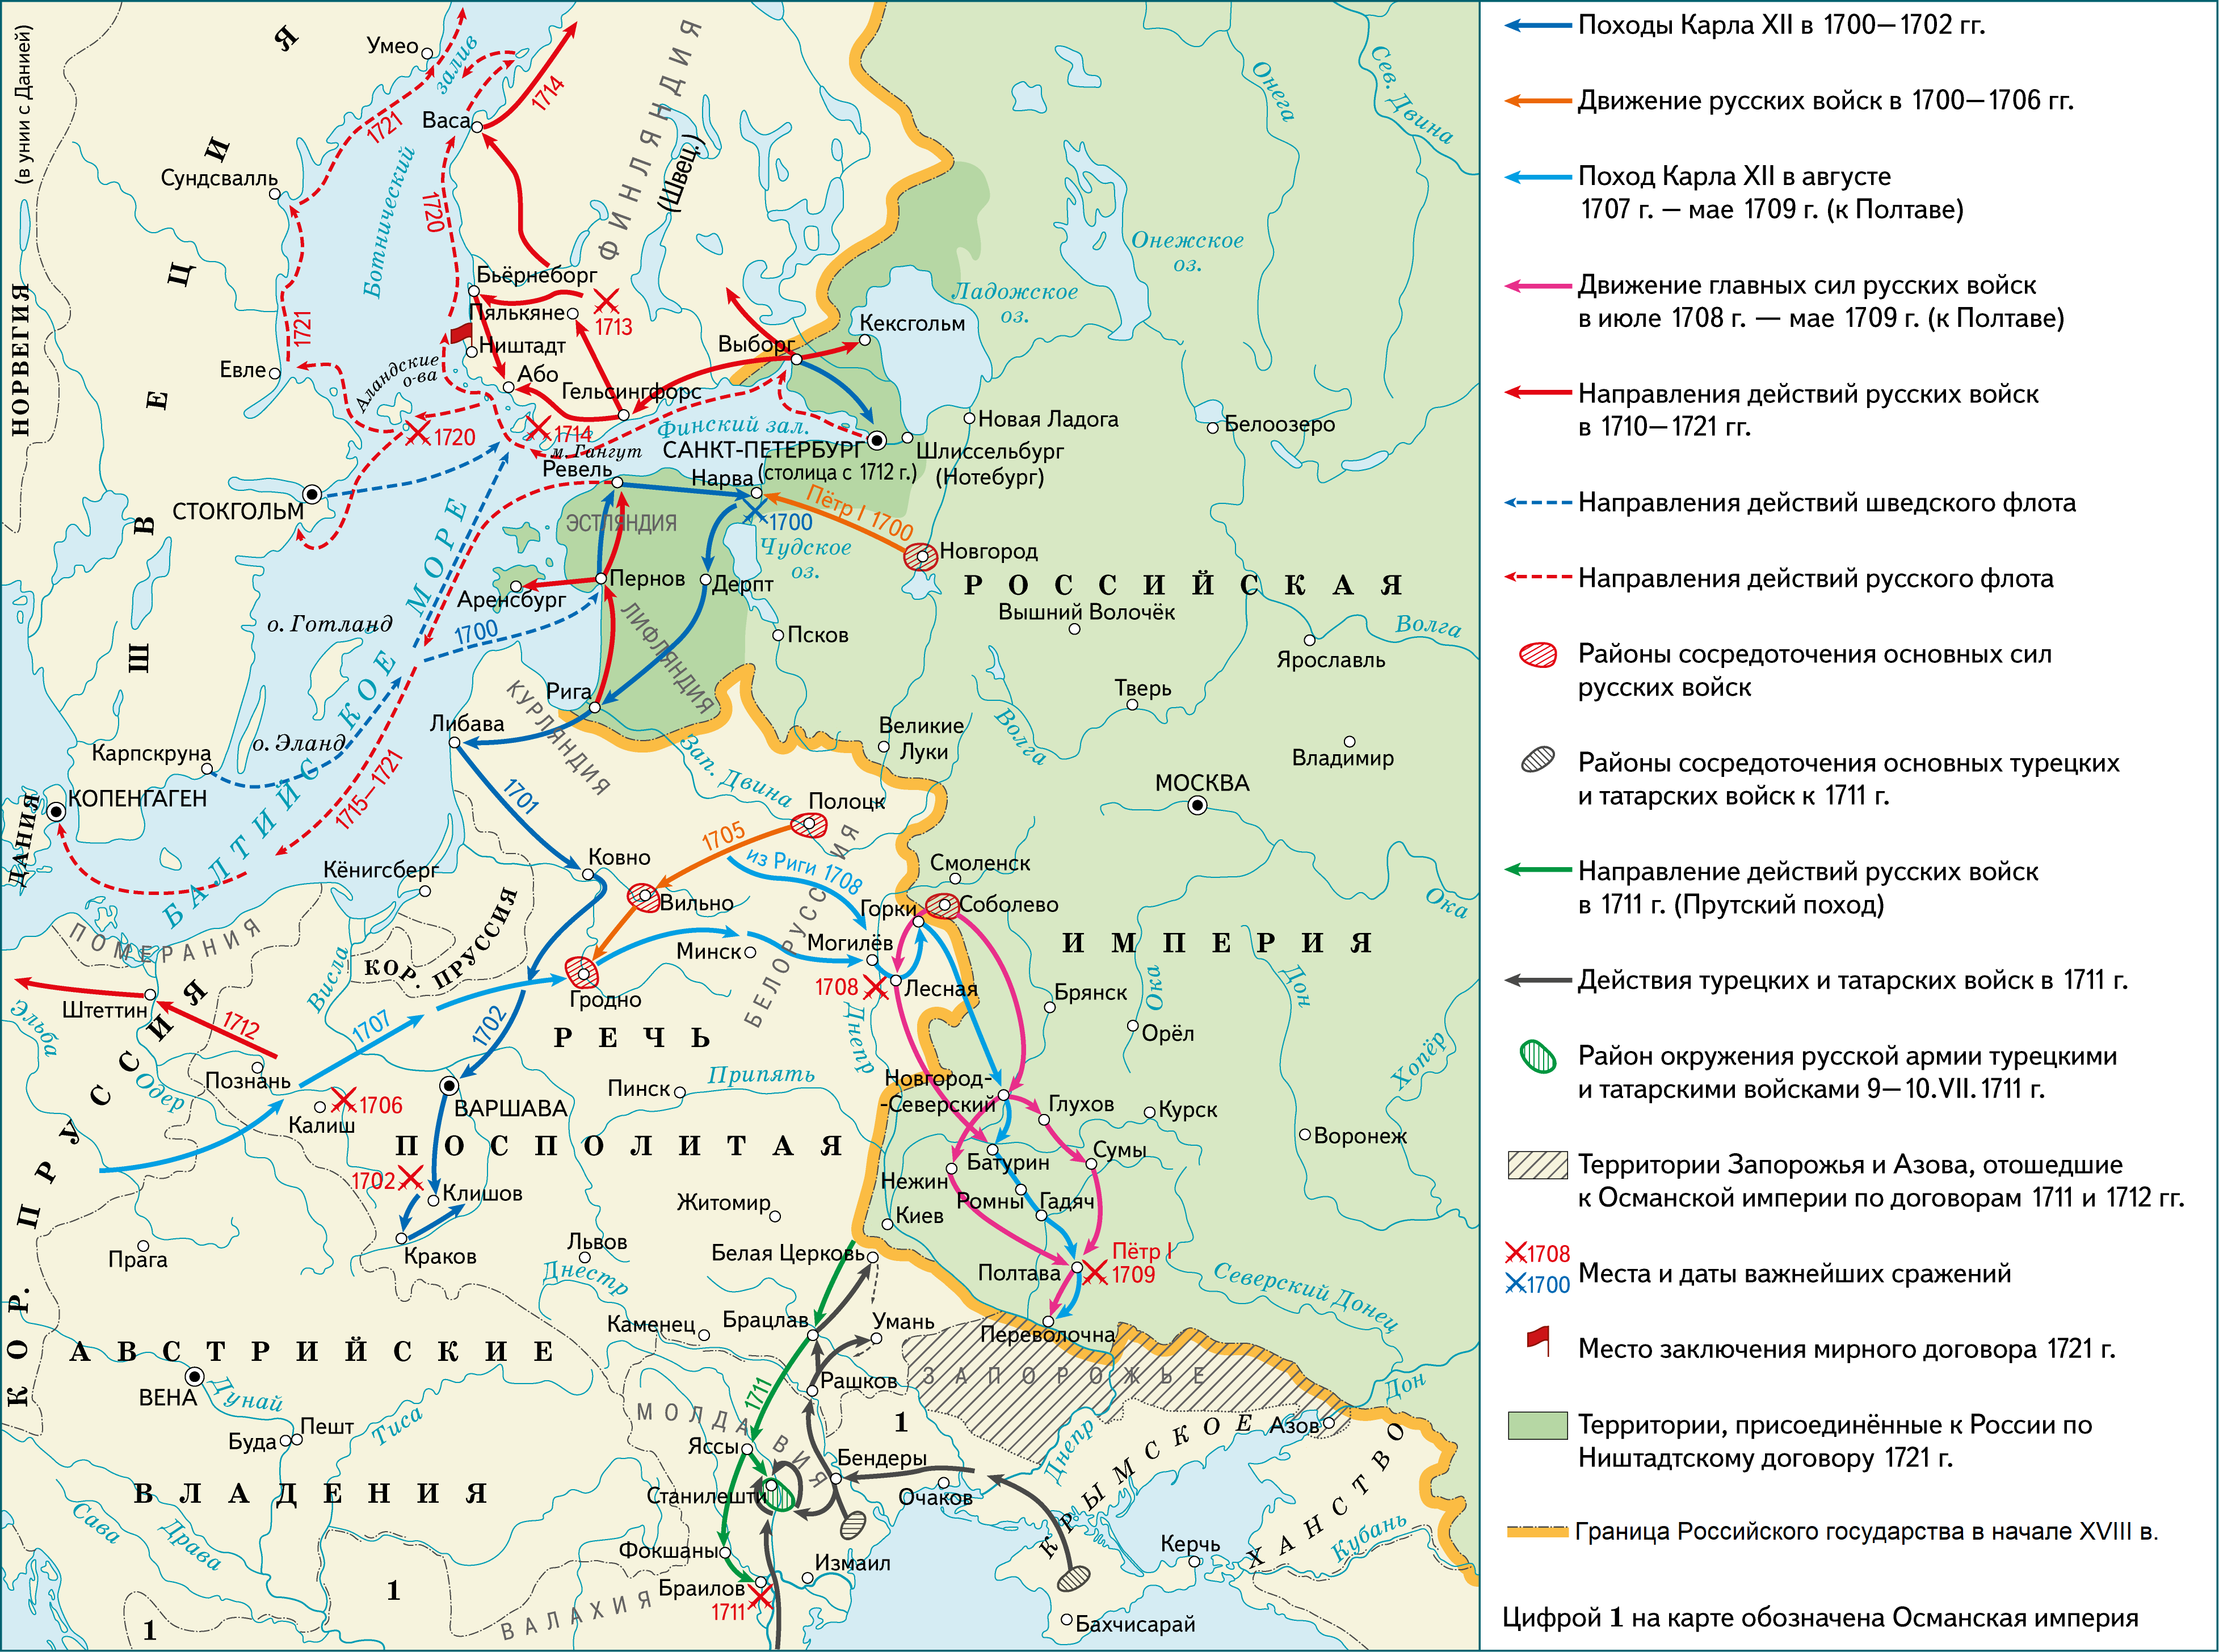 Карта Северной войны 1700-1721.